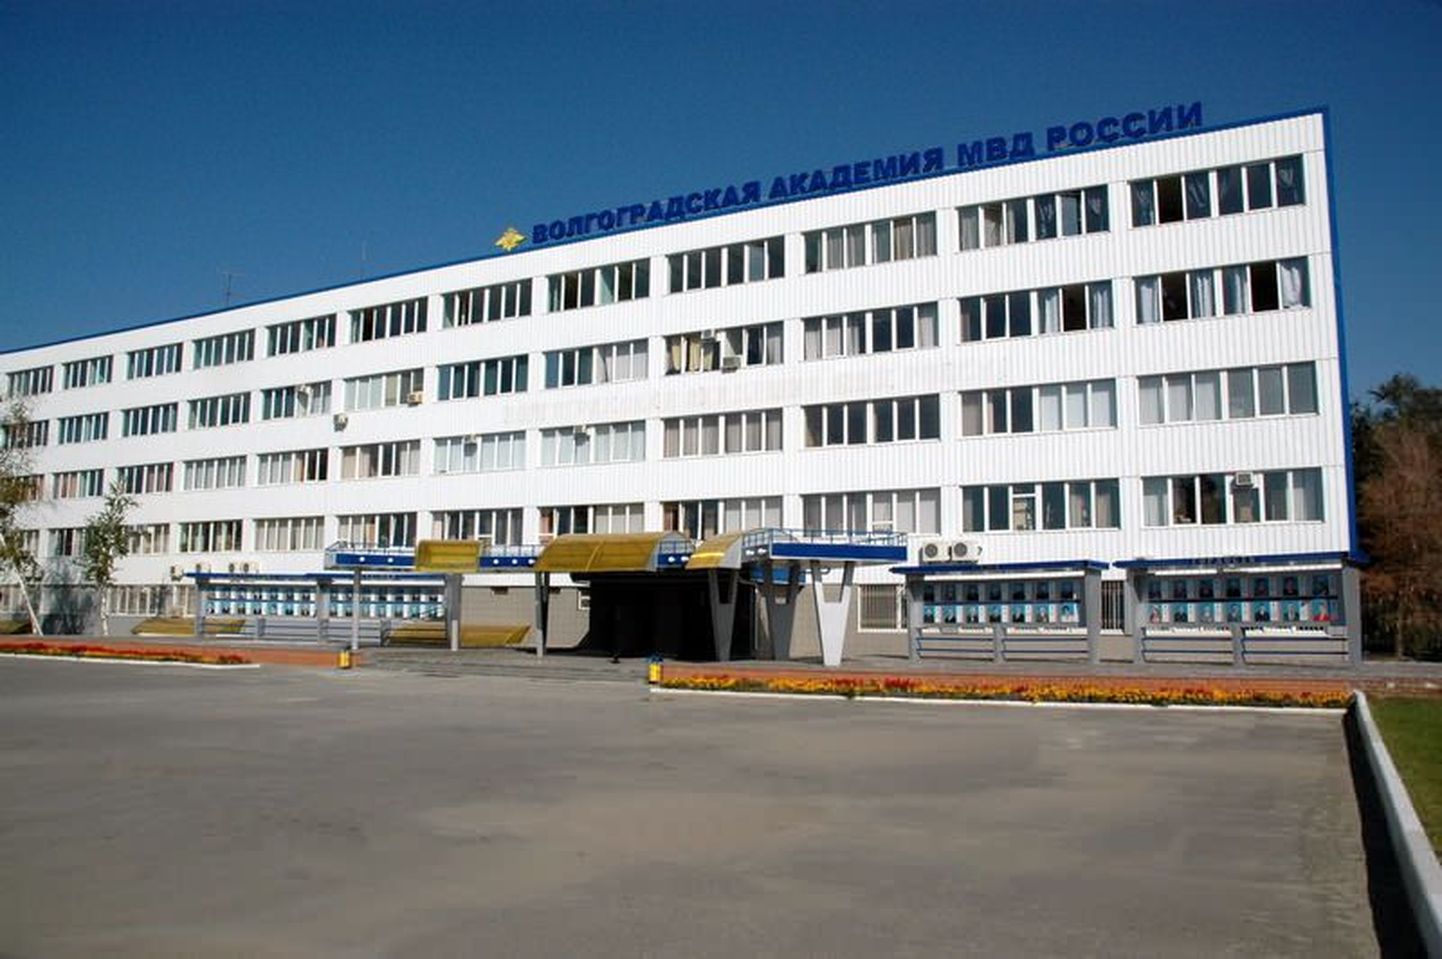 Siseministeeriumi akadeeemia Volgogradis